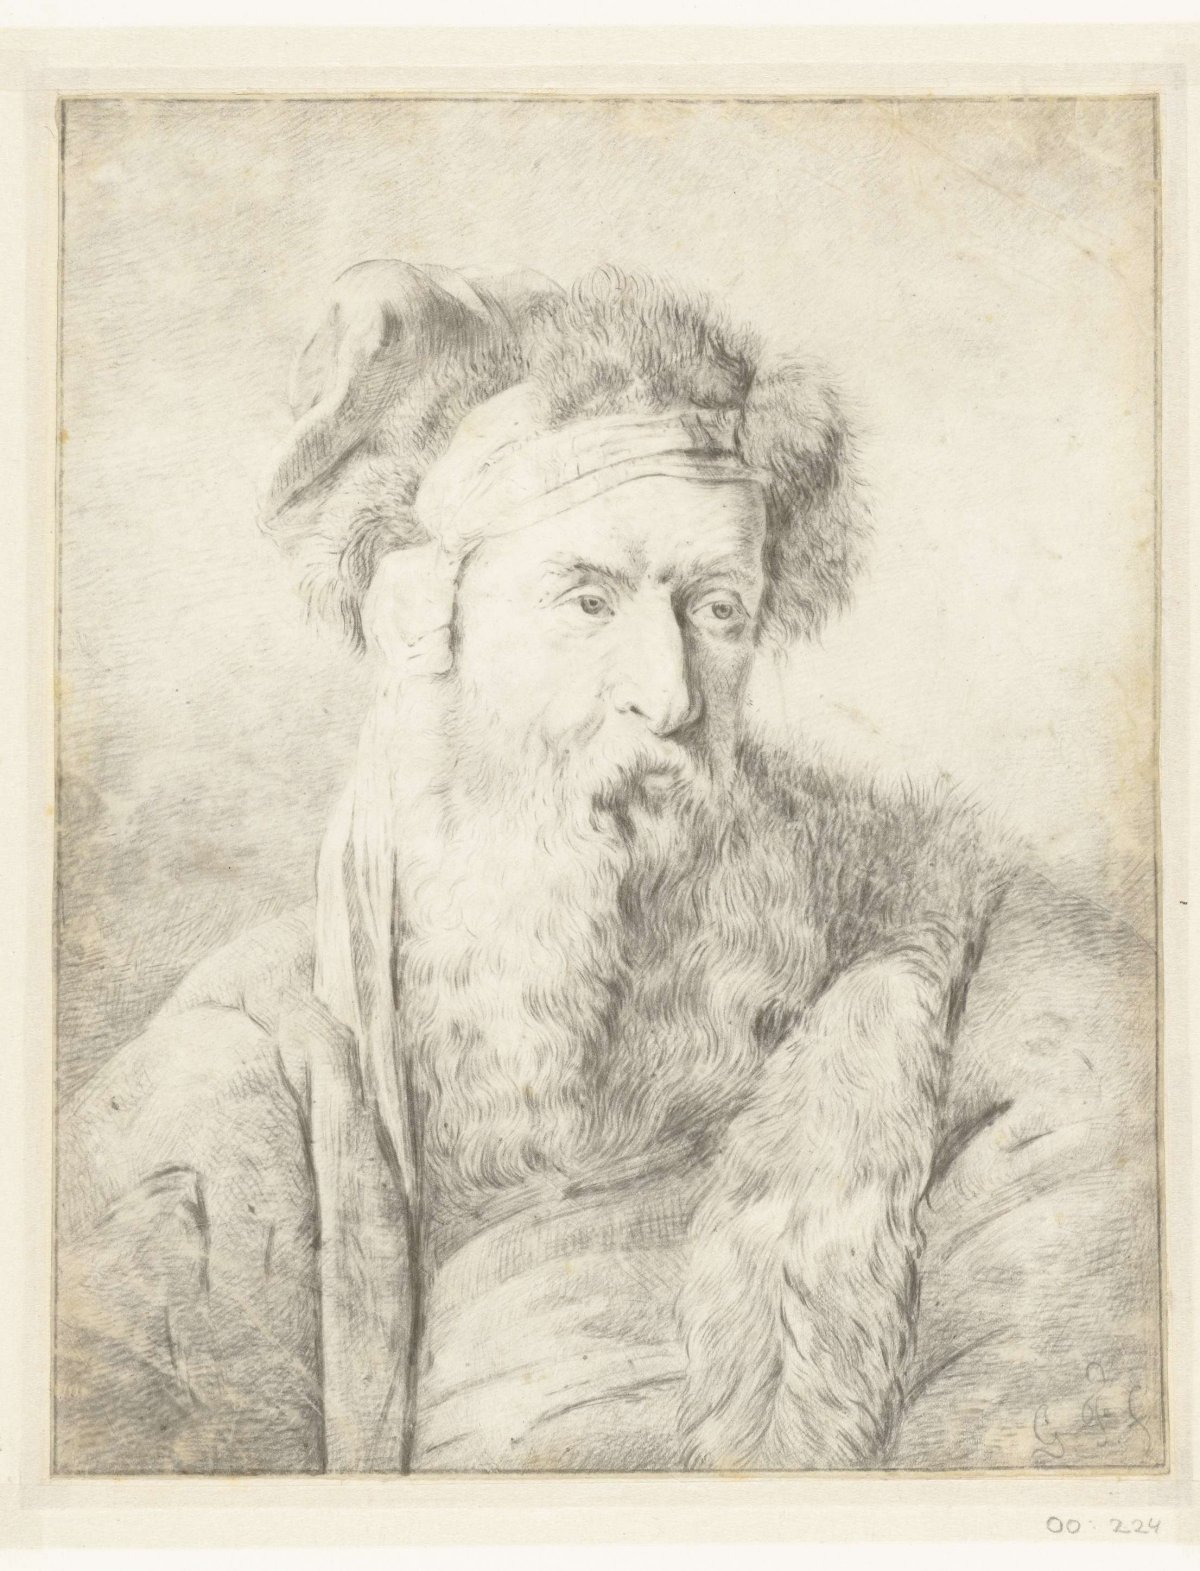 Man with beard and fur hat, Rembrandt van Rijn, 1625 - 1710